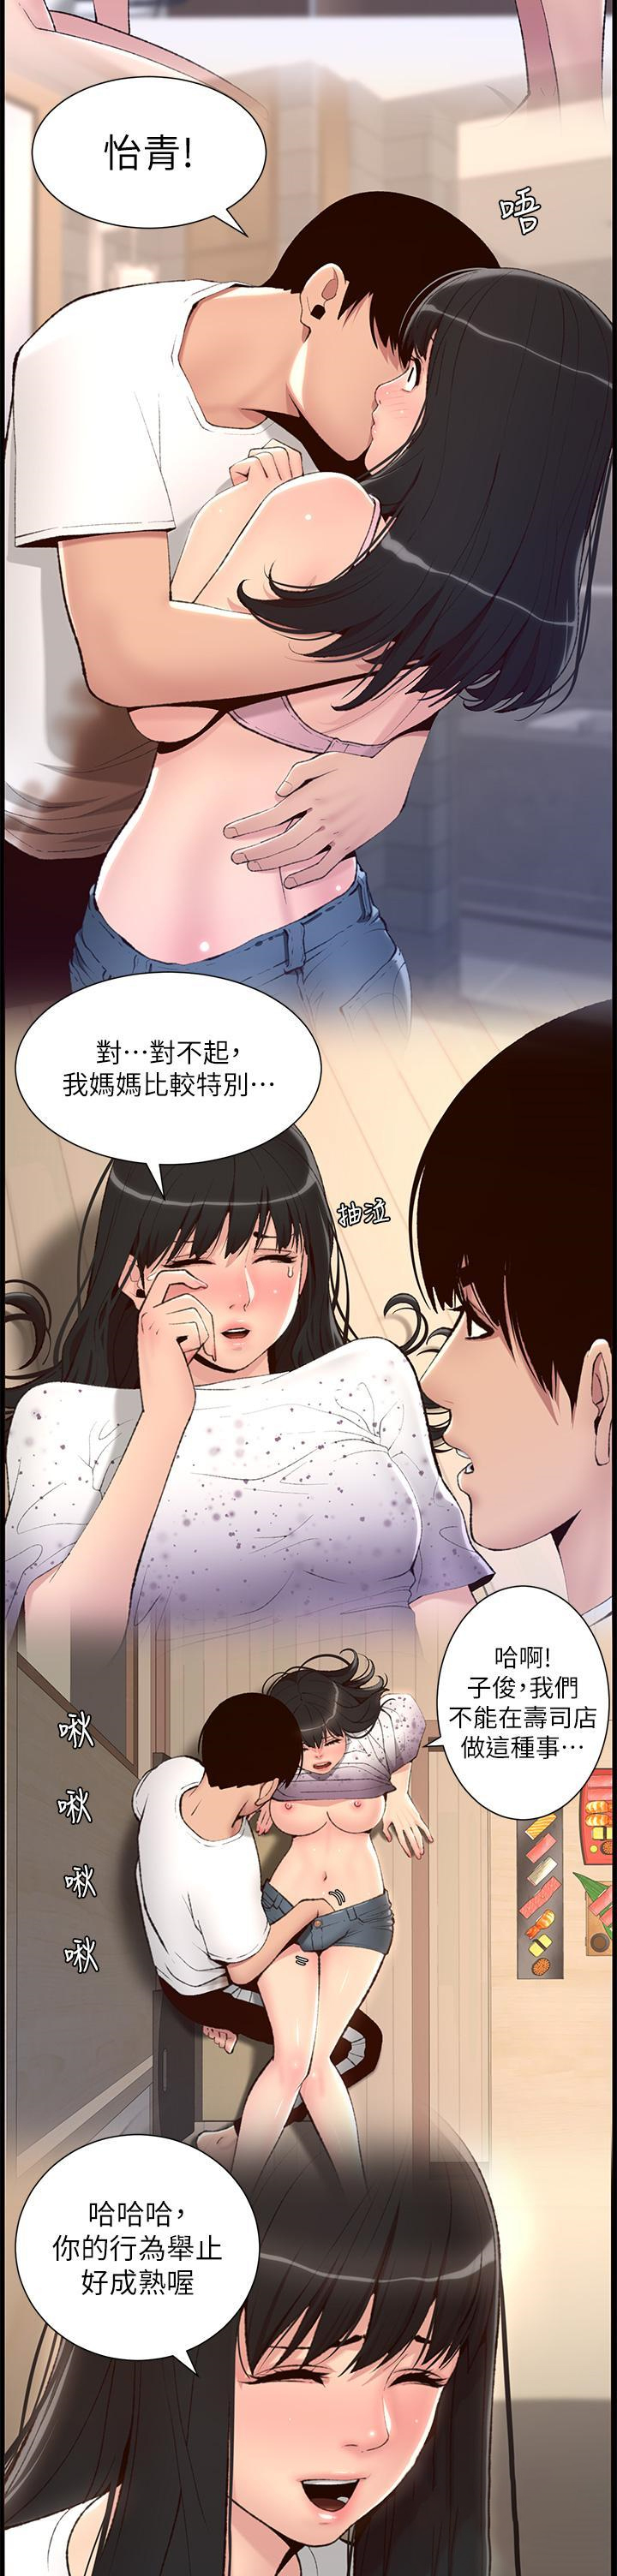 韩国污漫画 帝王App 第90话 最终话 游戏重新下载中… 12